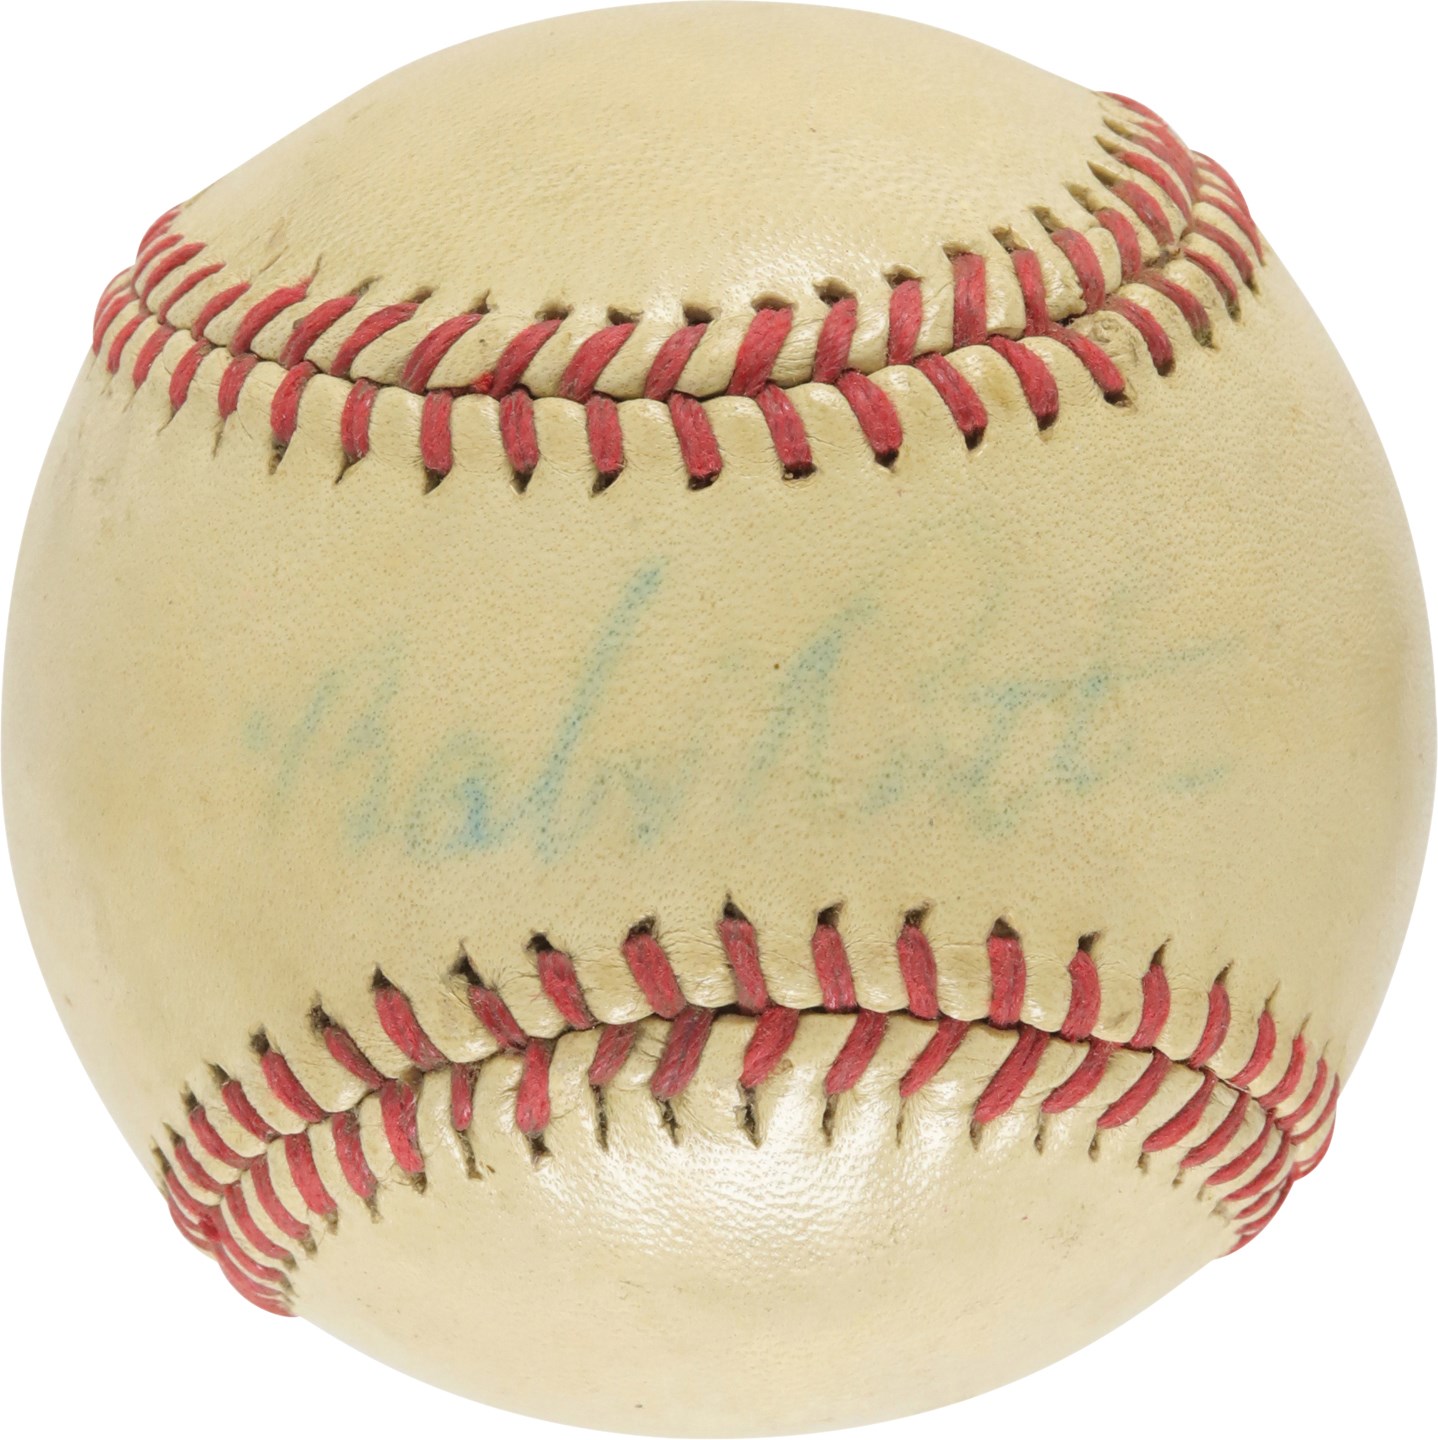 - Babe Ruth Single Signed Baseball (PSA)